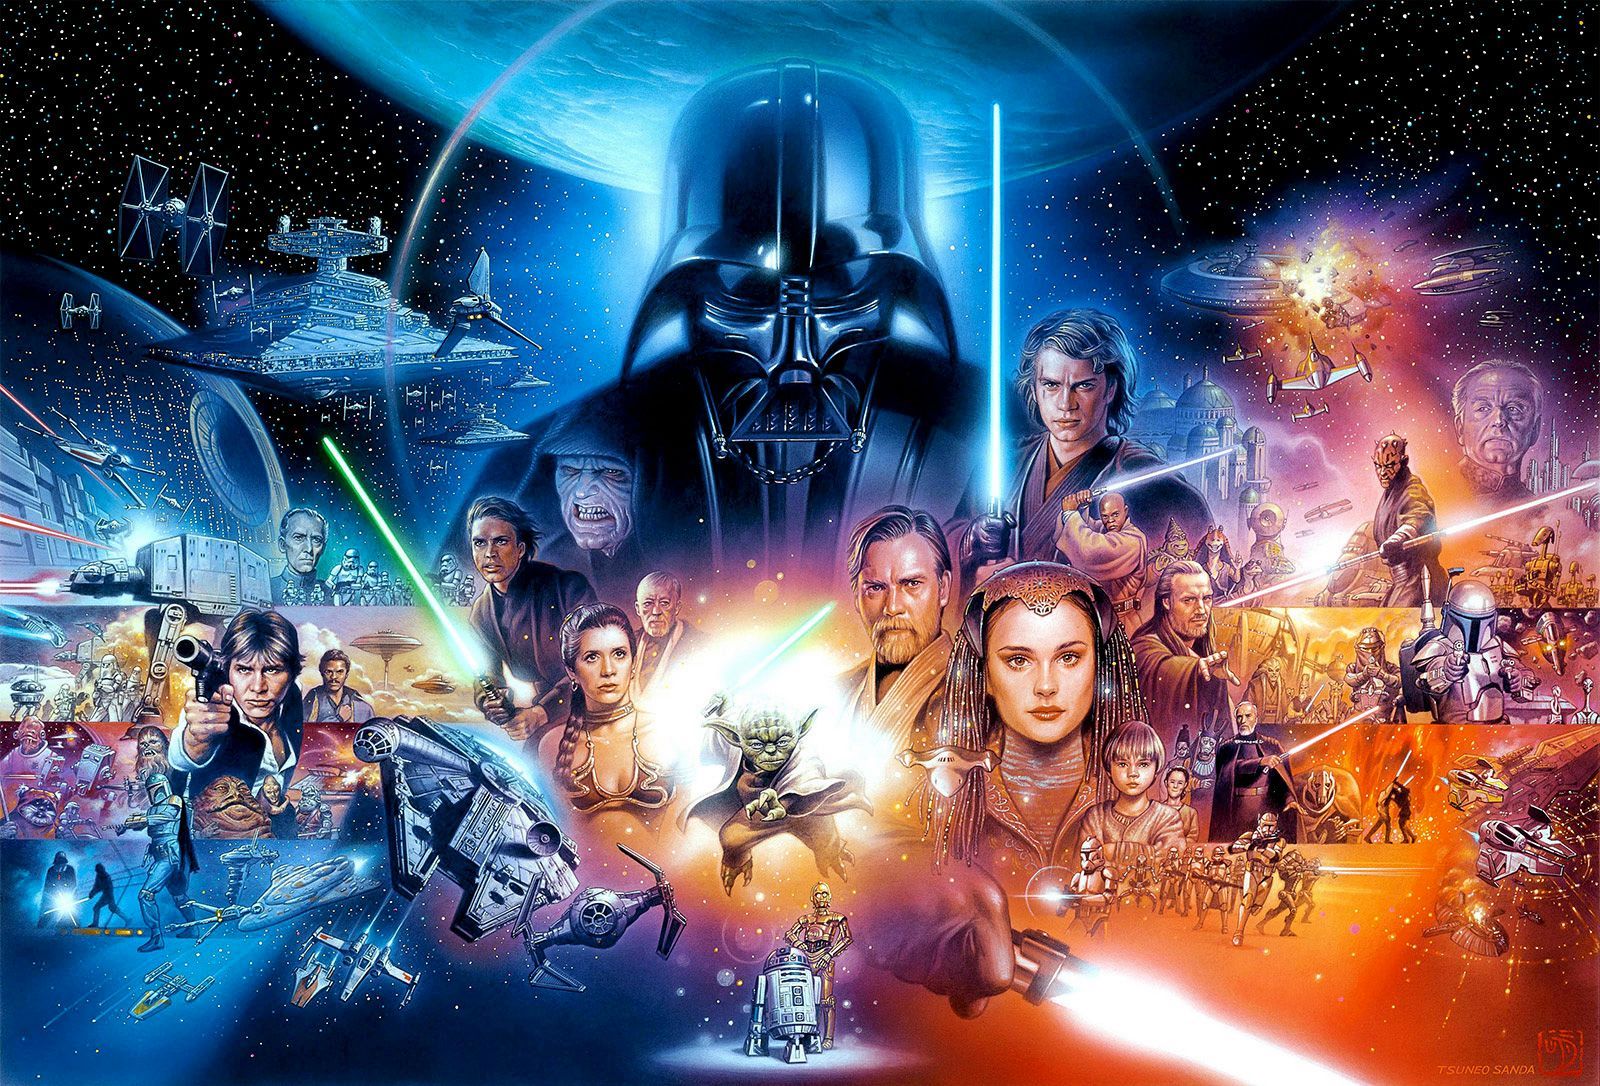 Onde assistir a todos os filmes e séries de Star Wars online